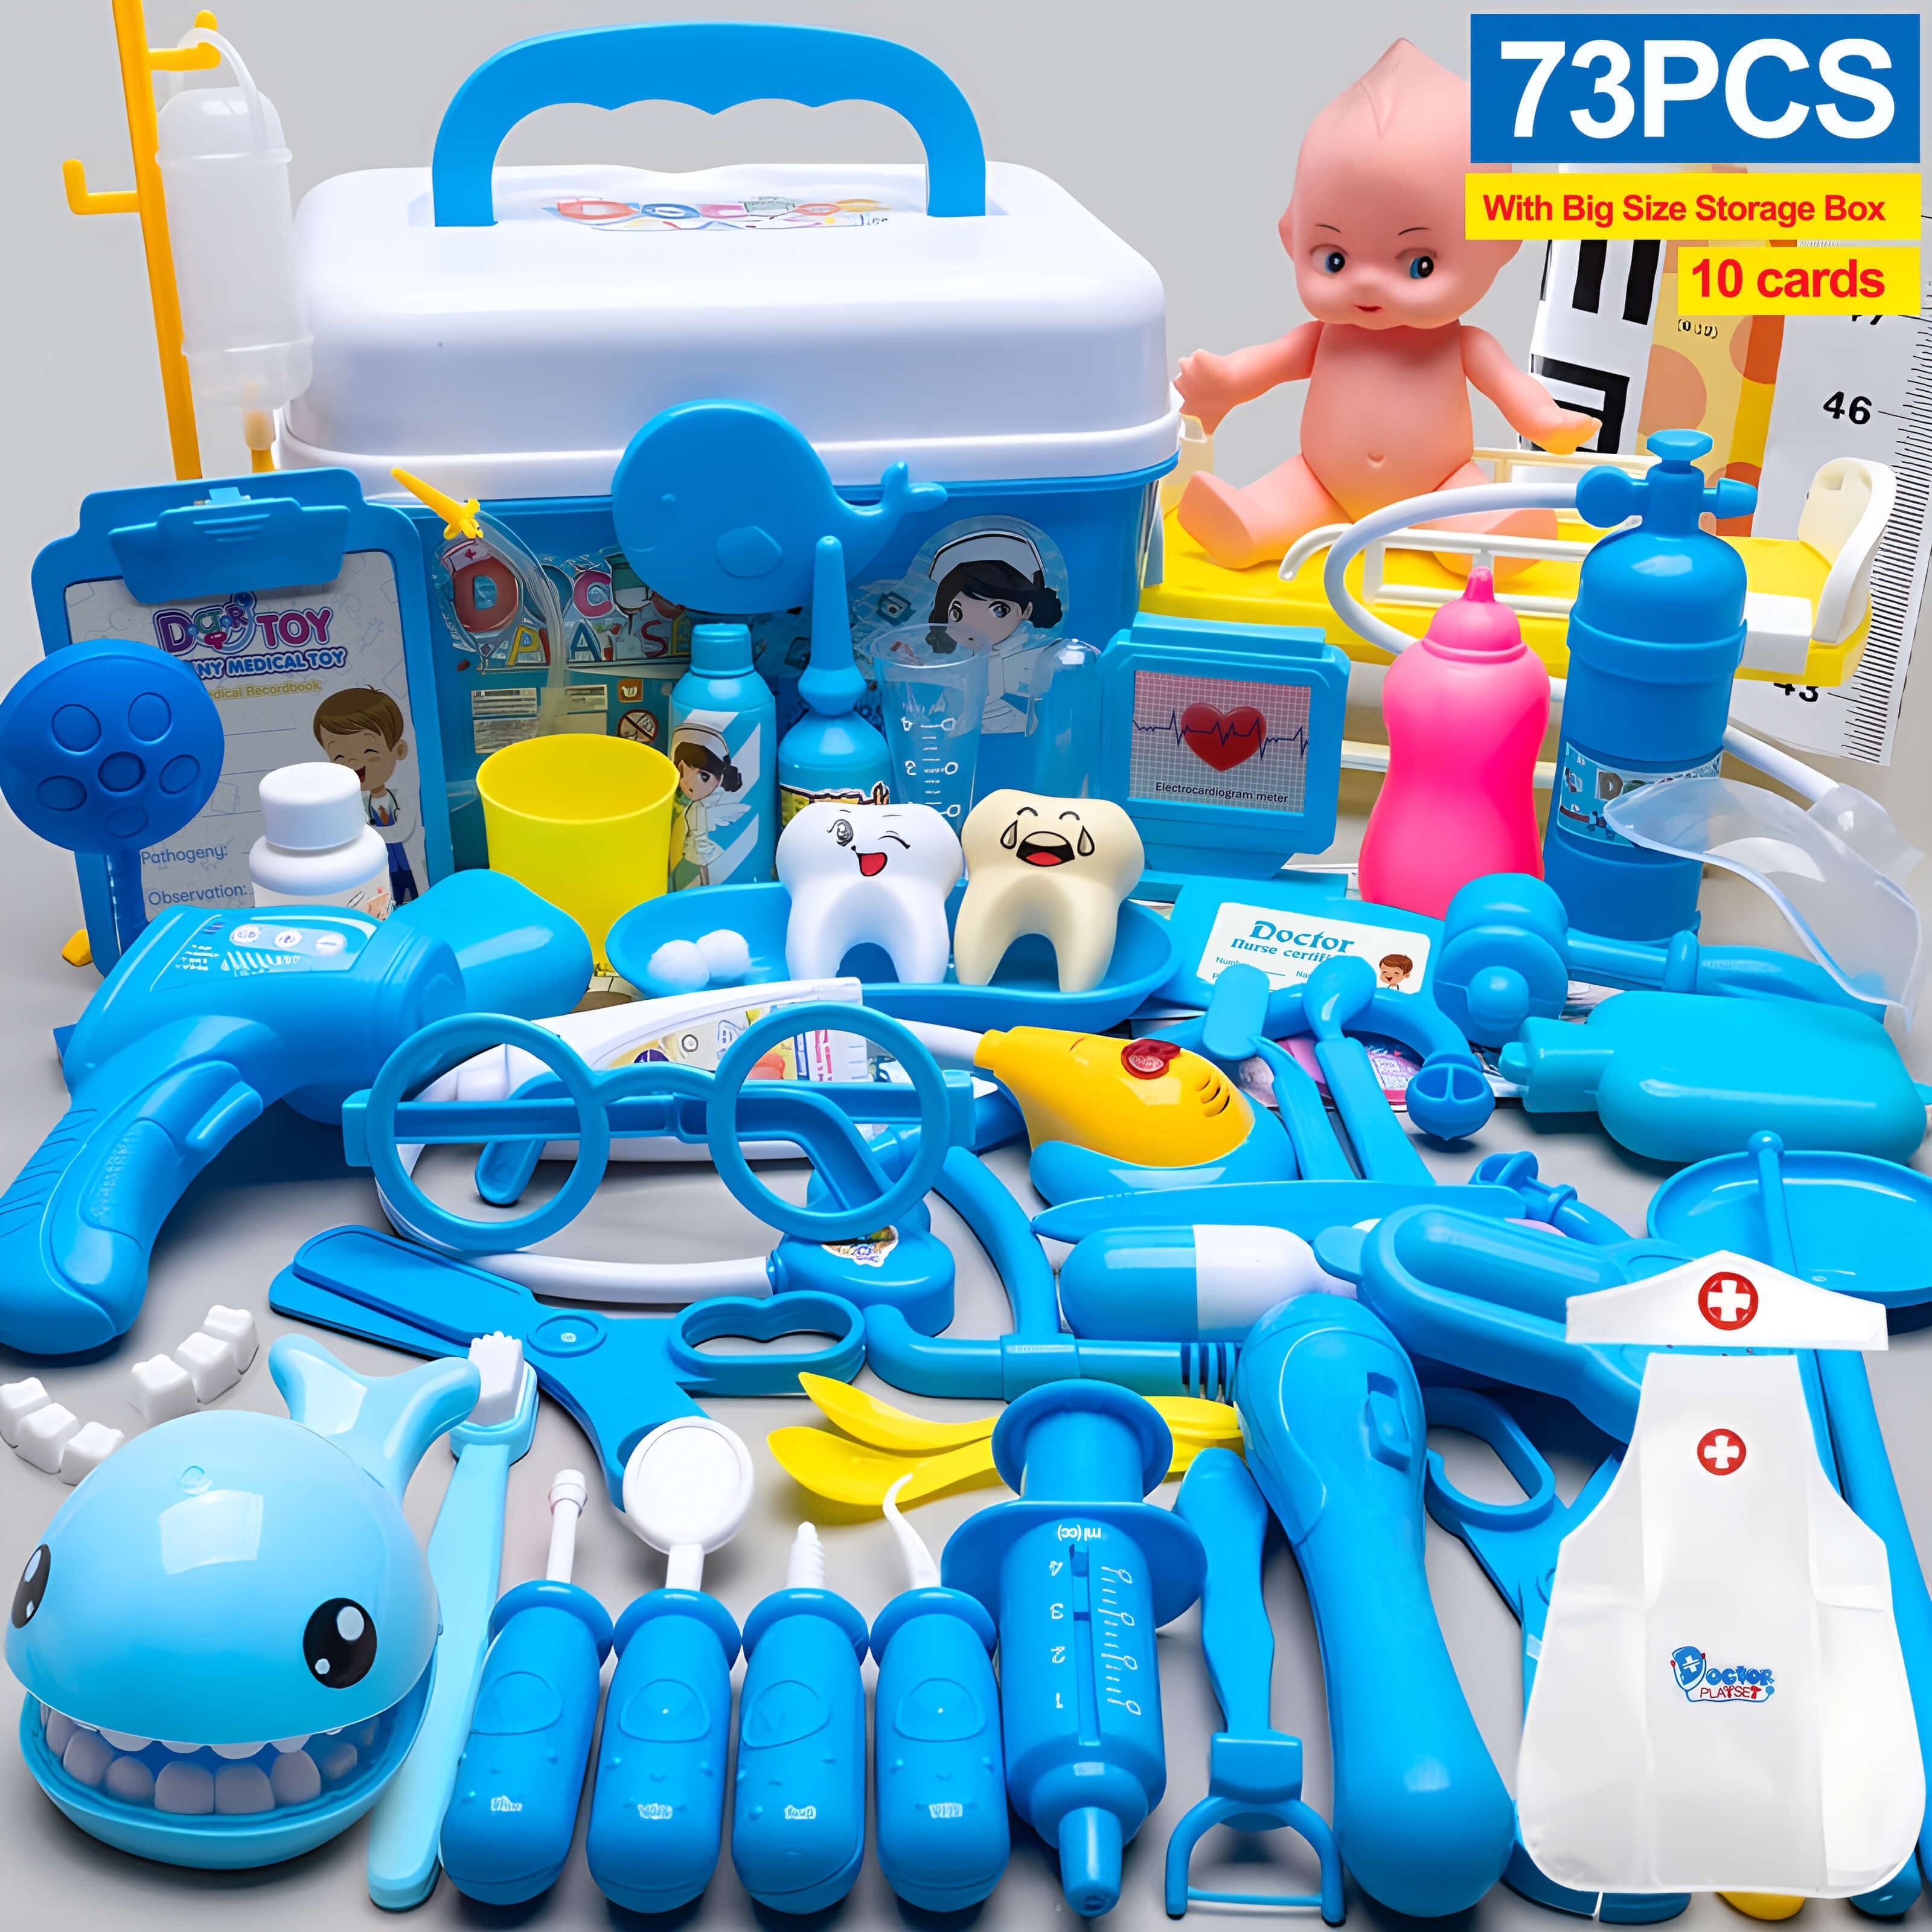 Ensemble de jouets dentaires pour enfants, kit dentaire, jouets de